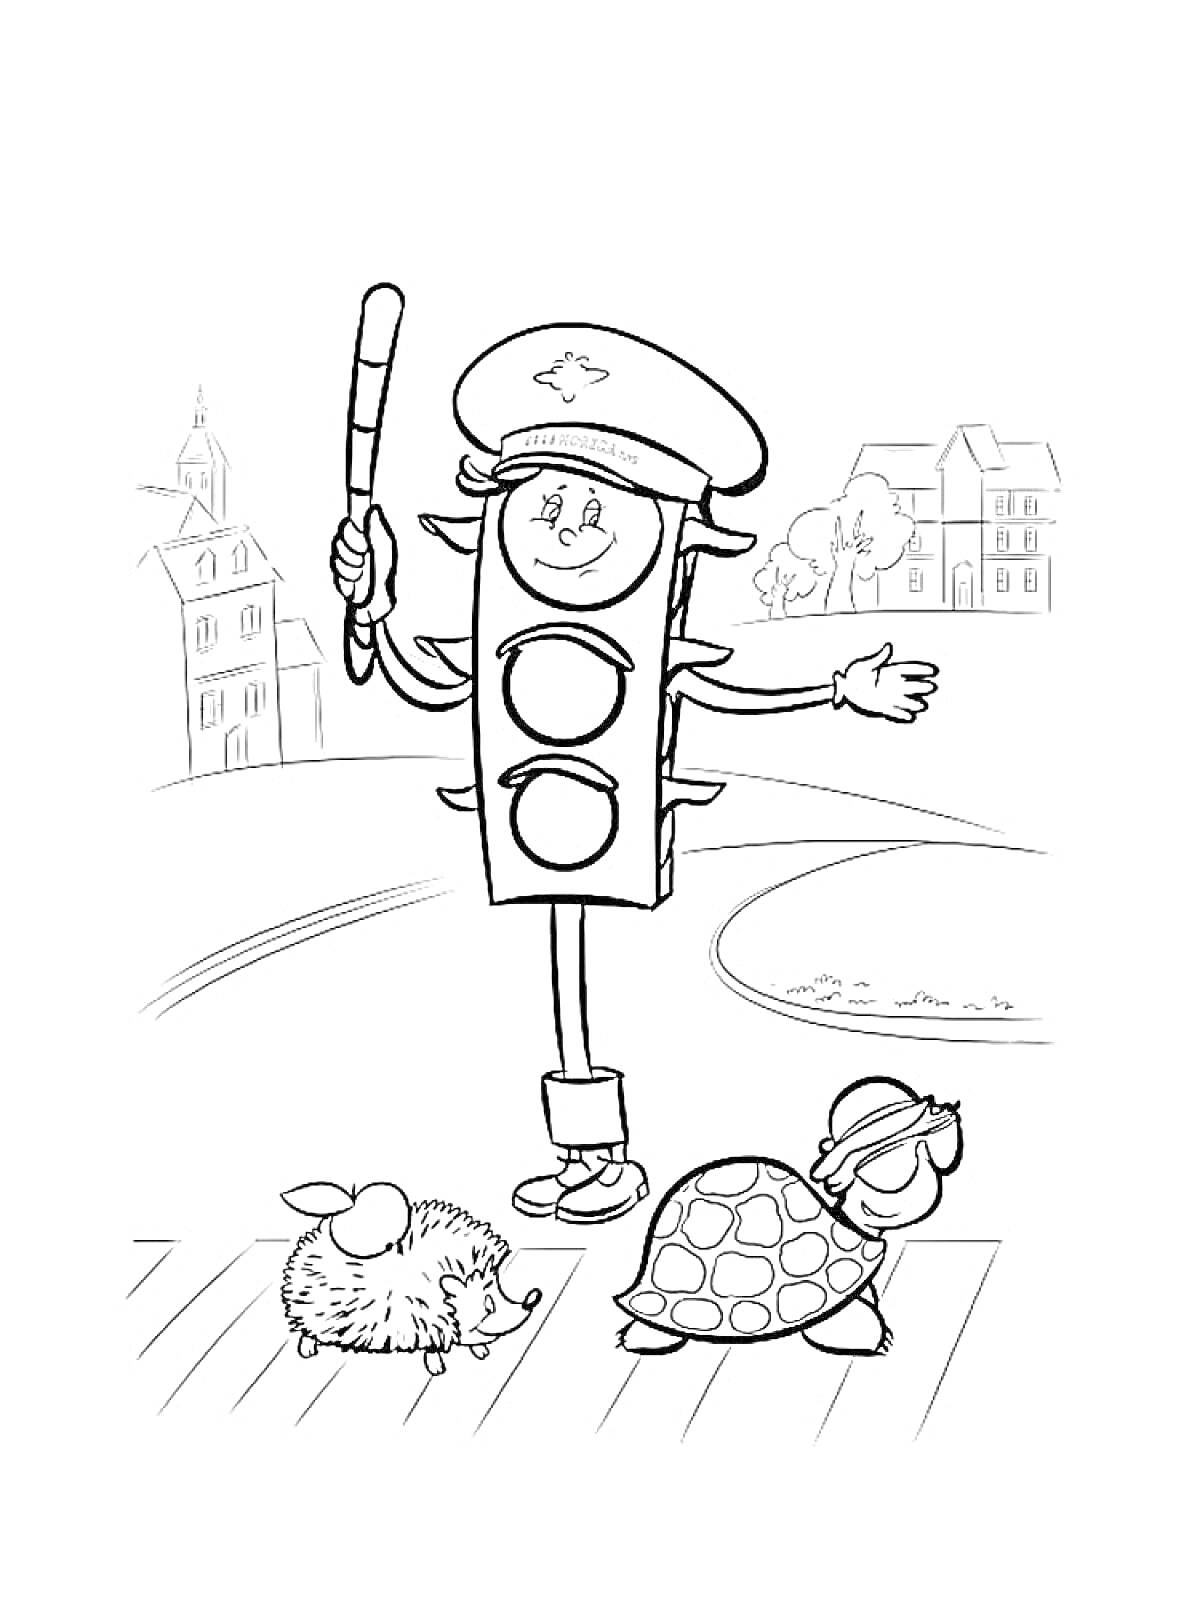 Раскраска Светофор с жезлом, переходящие дорогу еж и черепаха, дома на заднем плане